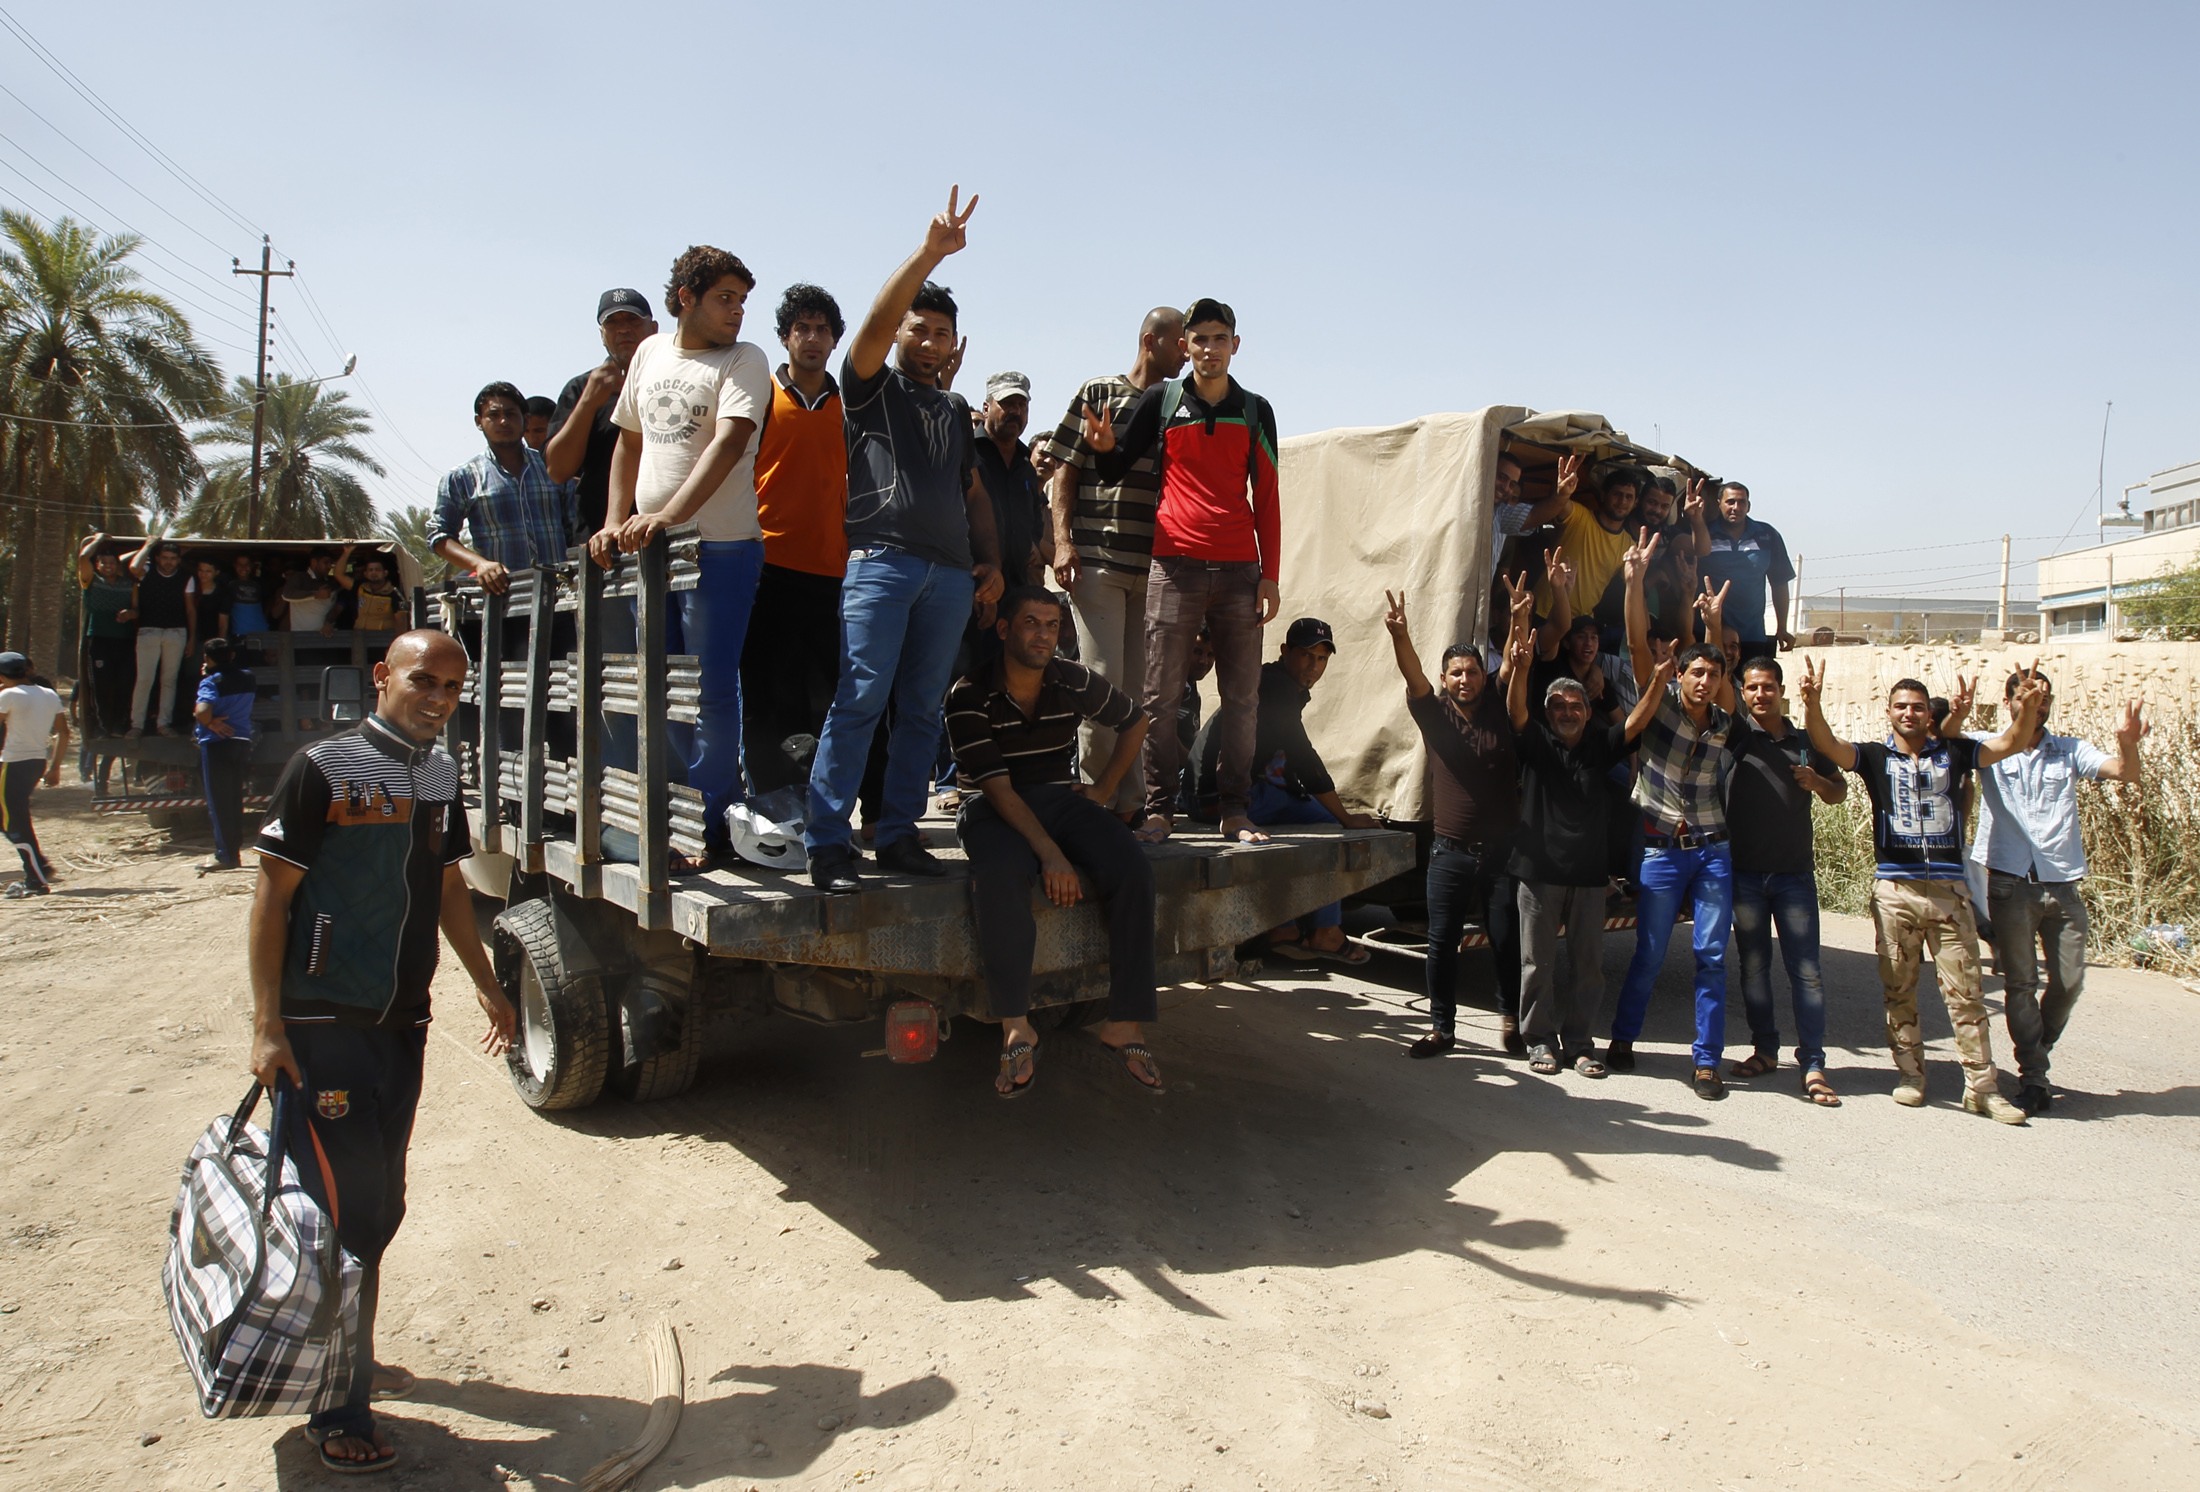 Φωτό - Reuters - Στο πλευρό του ιρακινού στρατού ενάντια στο ΙΚΙΛ οι εθελοντές